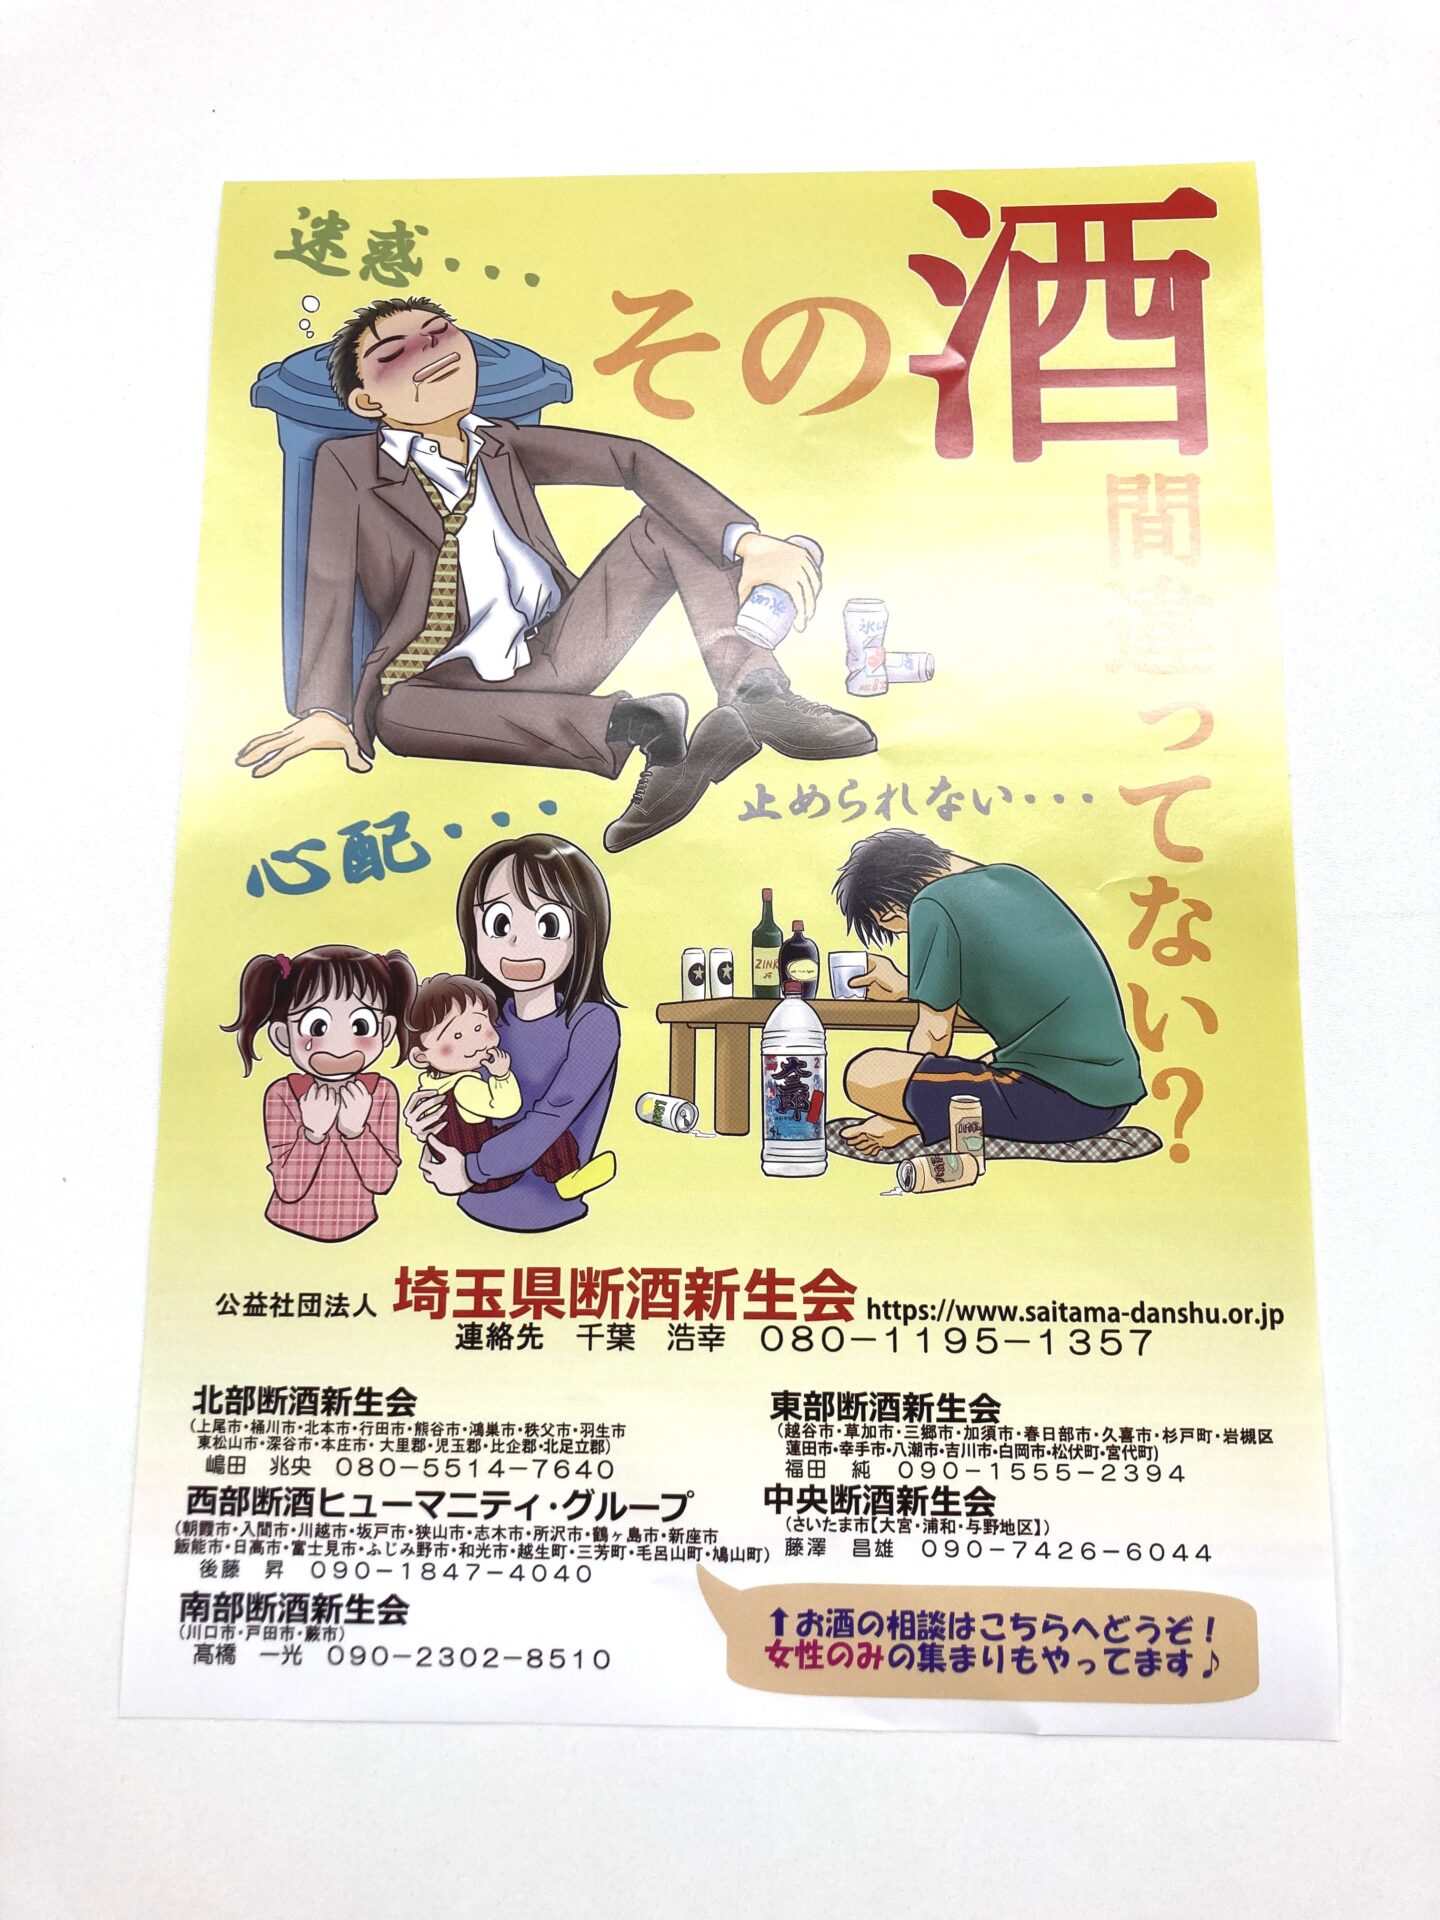 公益社団法人 埼玉県断酒新生会様よりご依頼のリーフレットとポスターを制作しました